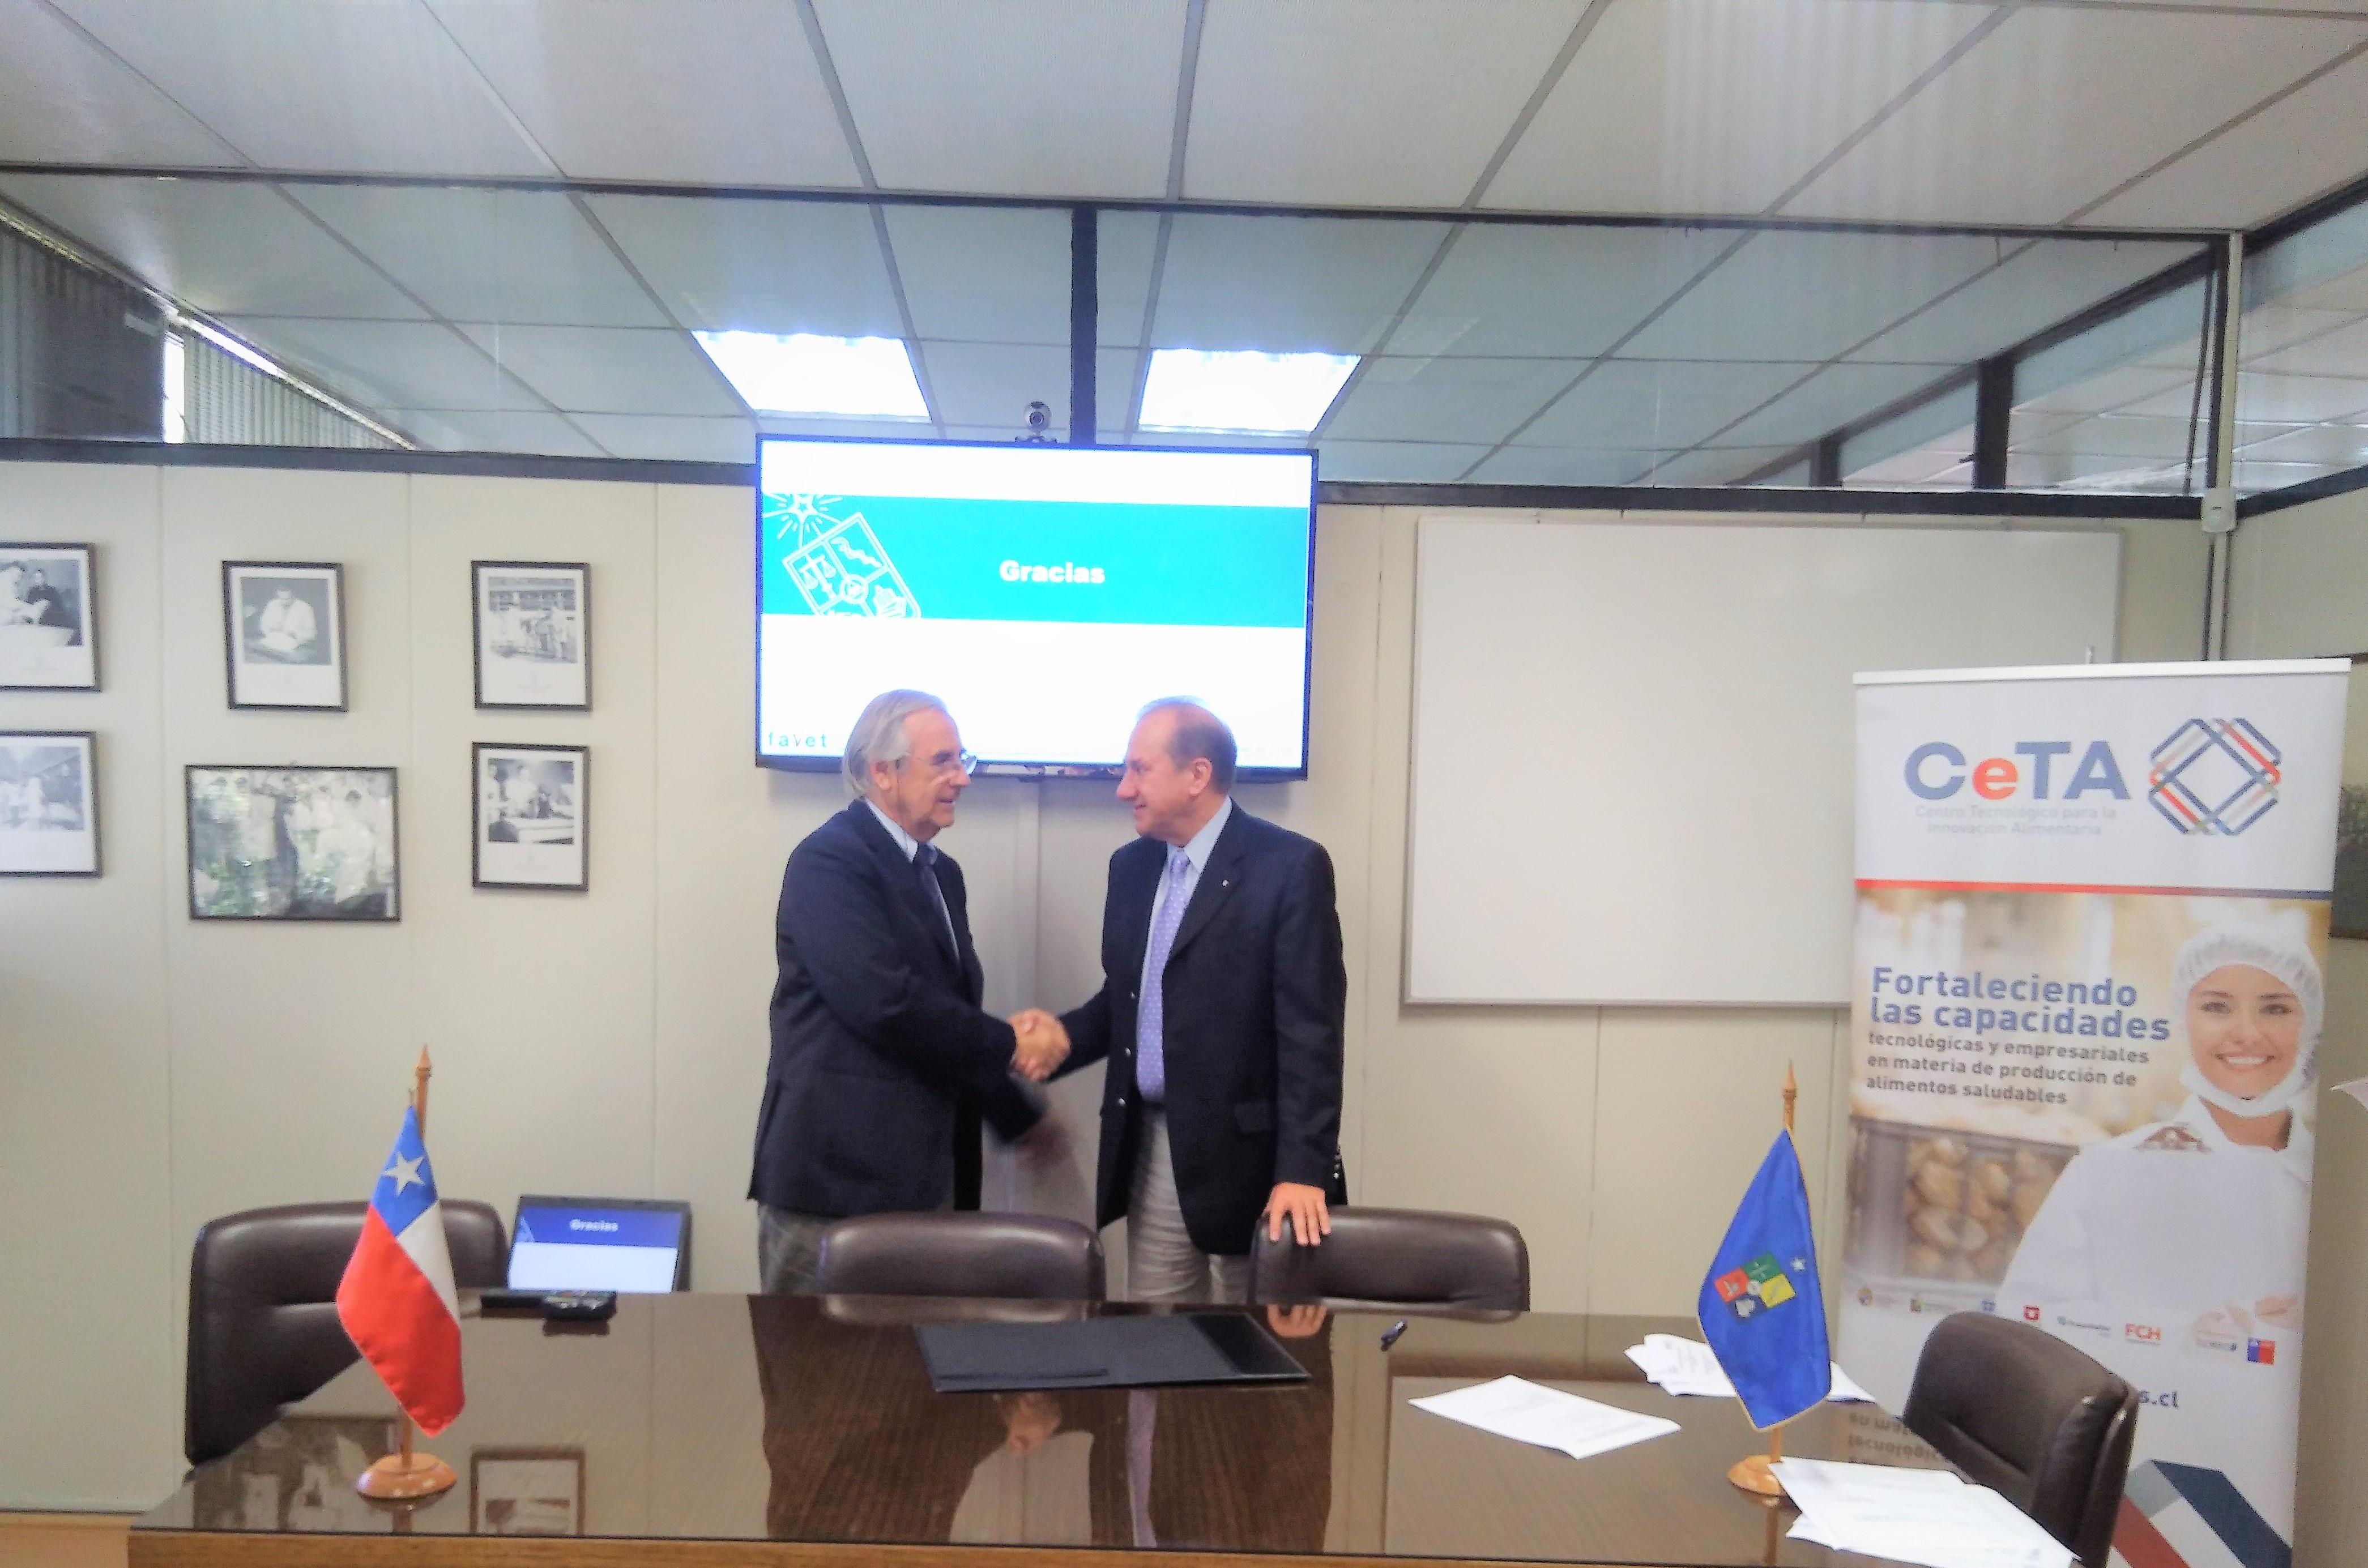 El Decano de Favet, Dr. Mario Maino y el representante del directorio de CeTA, Jaime Bellolio Rodríguez, tras la firma del convenio de colaboración.